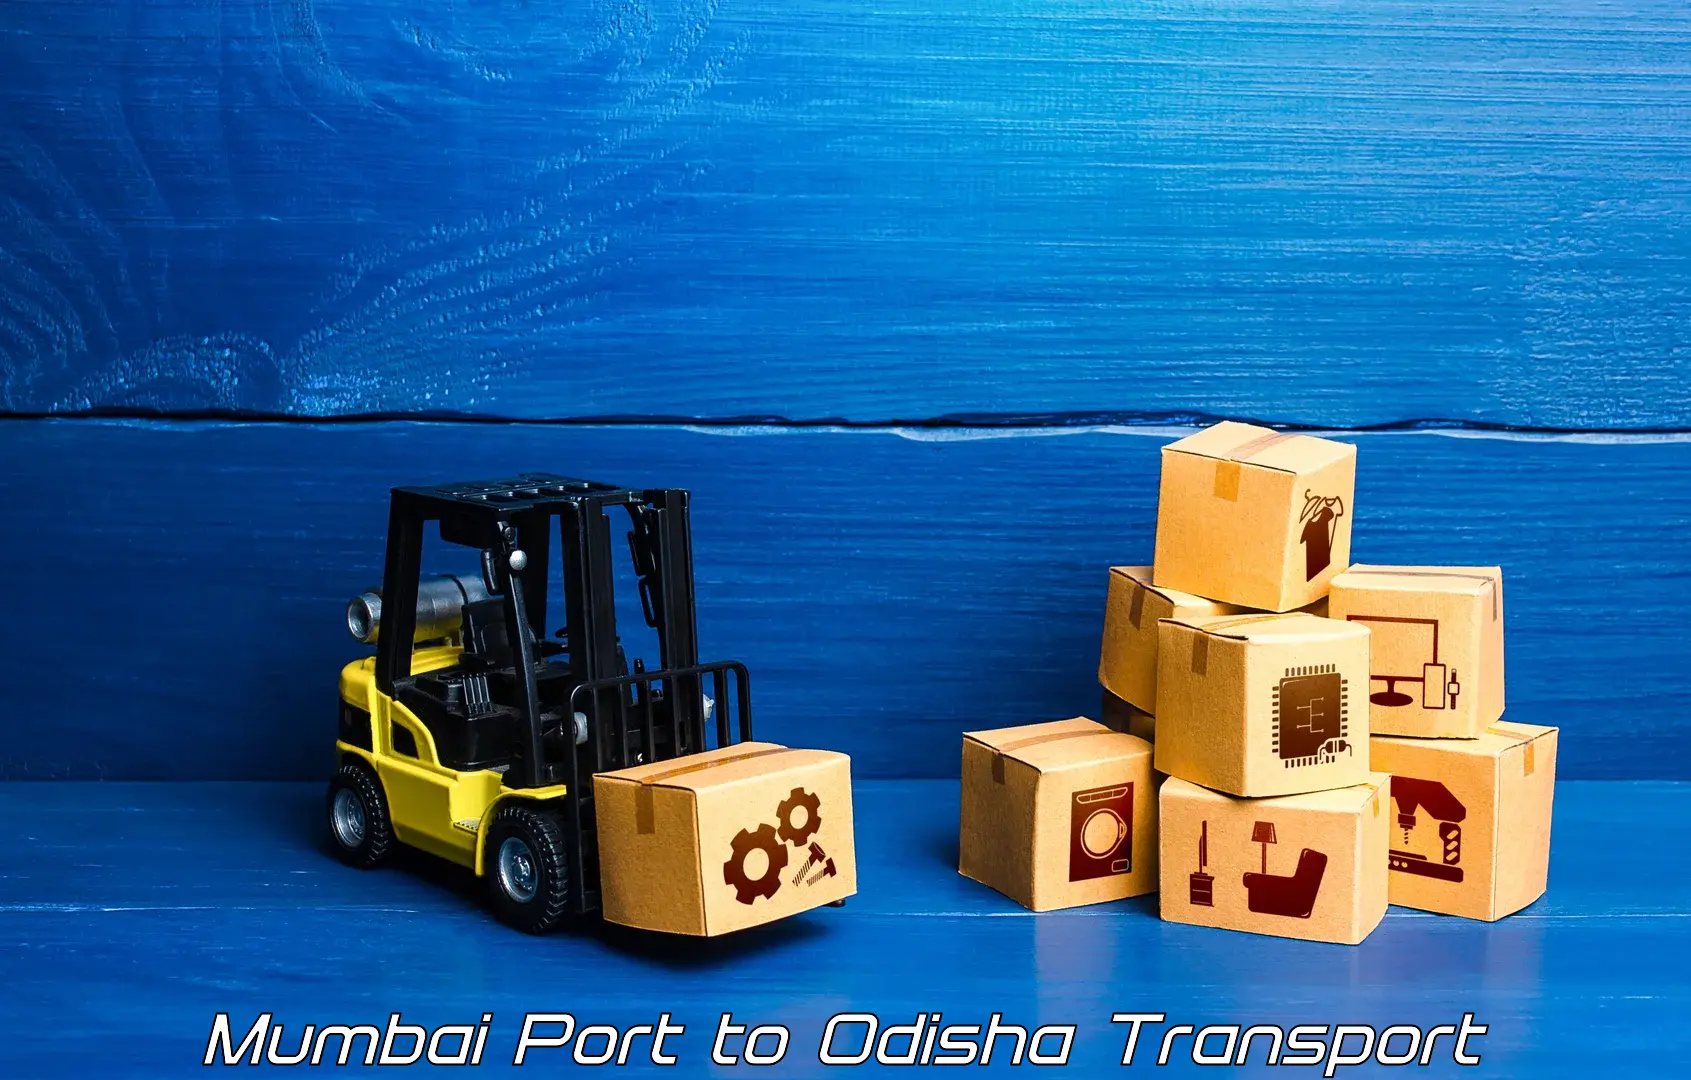 Part load transport service in India Mumbai Port to Ukhunda